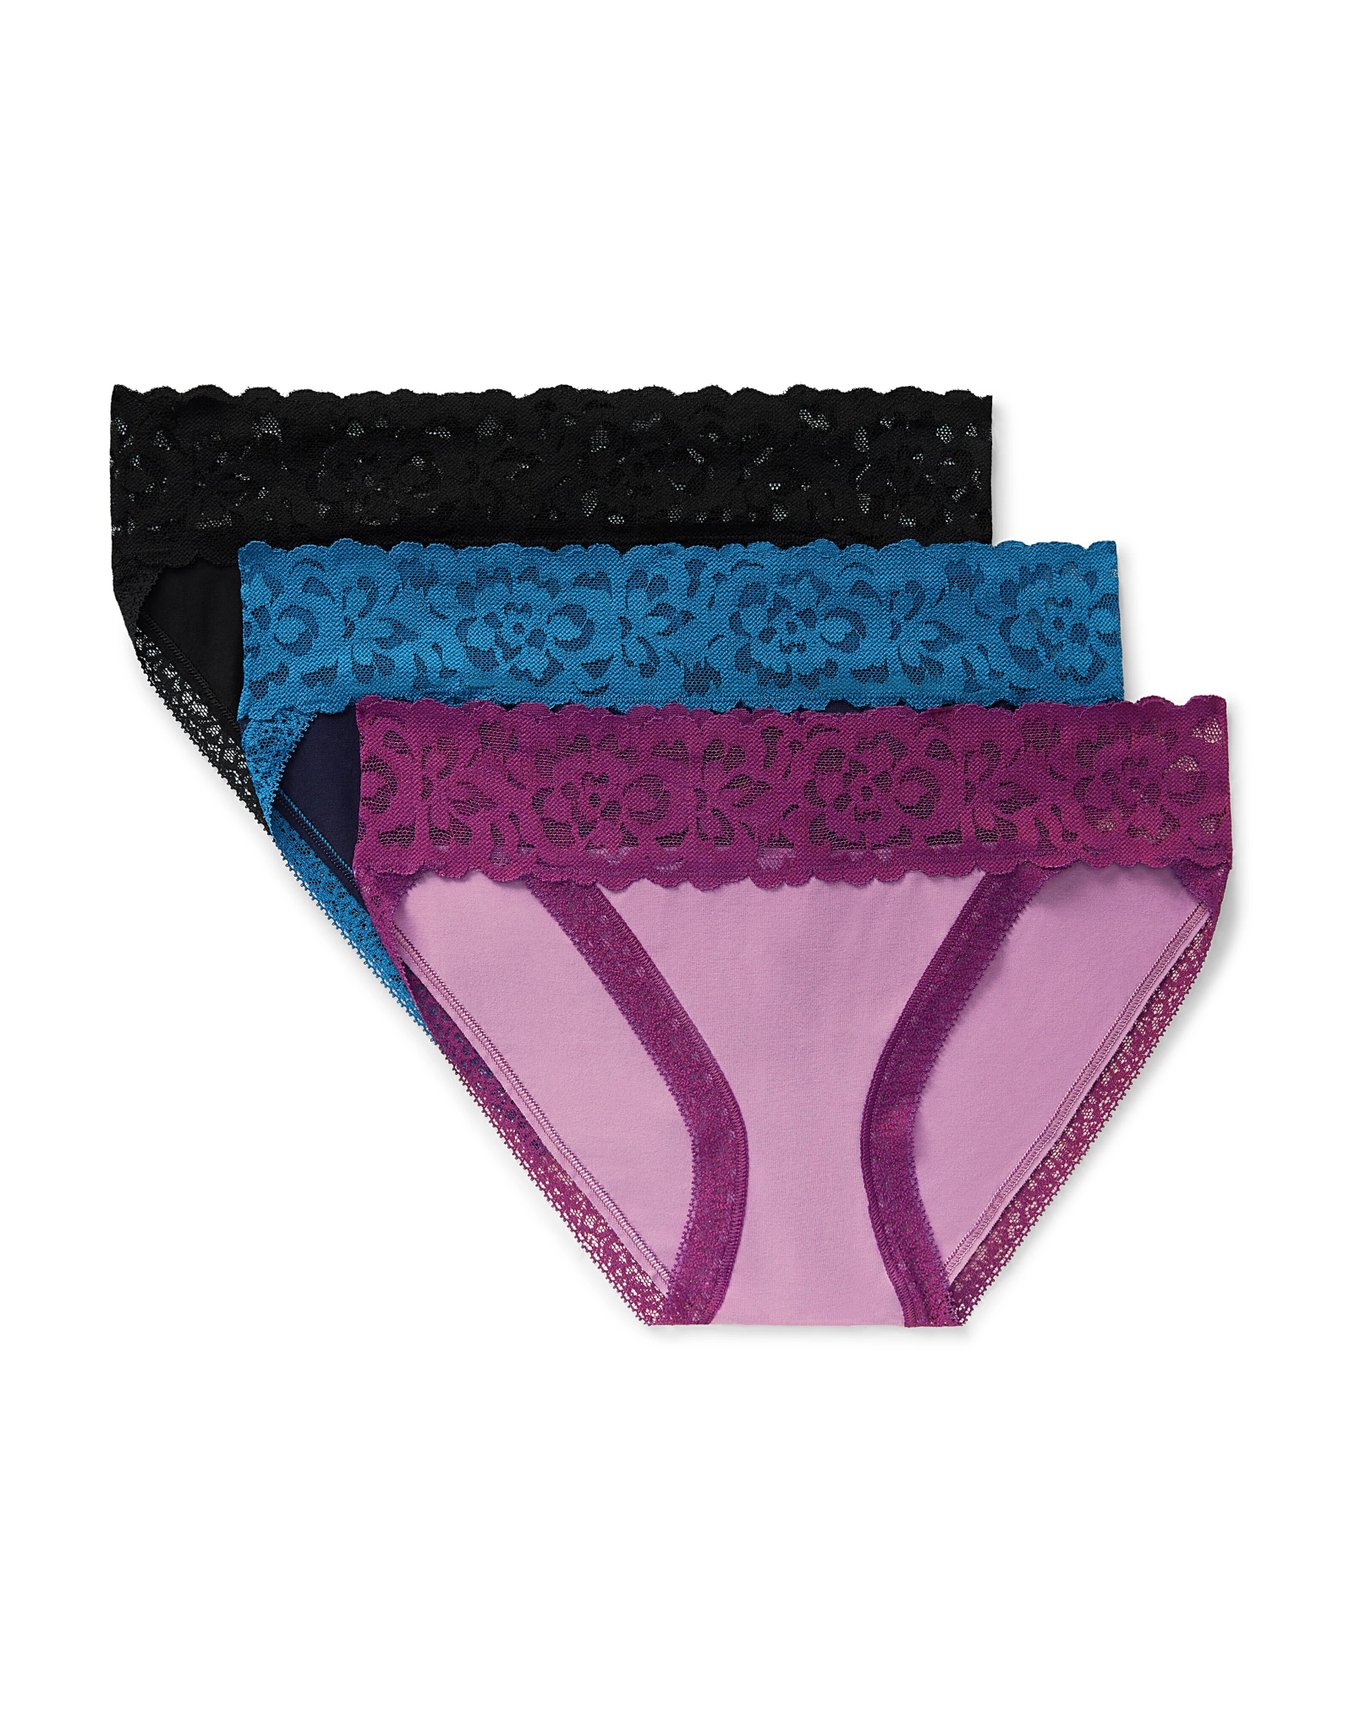 Women's String Bikini Panties Low Rise Underwear High Cut Cheeky Panties  XS-XL